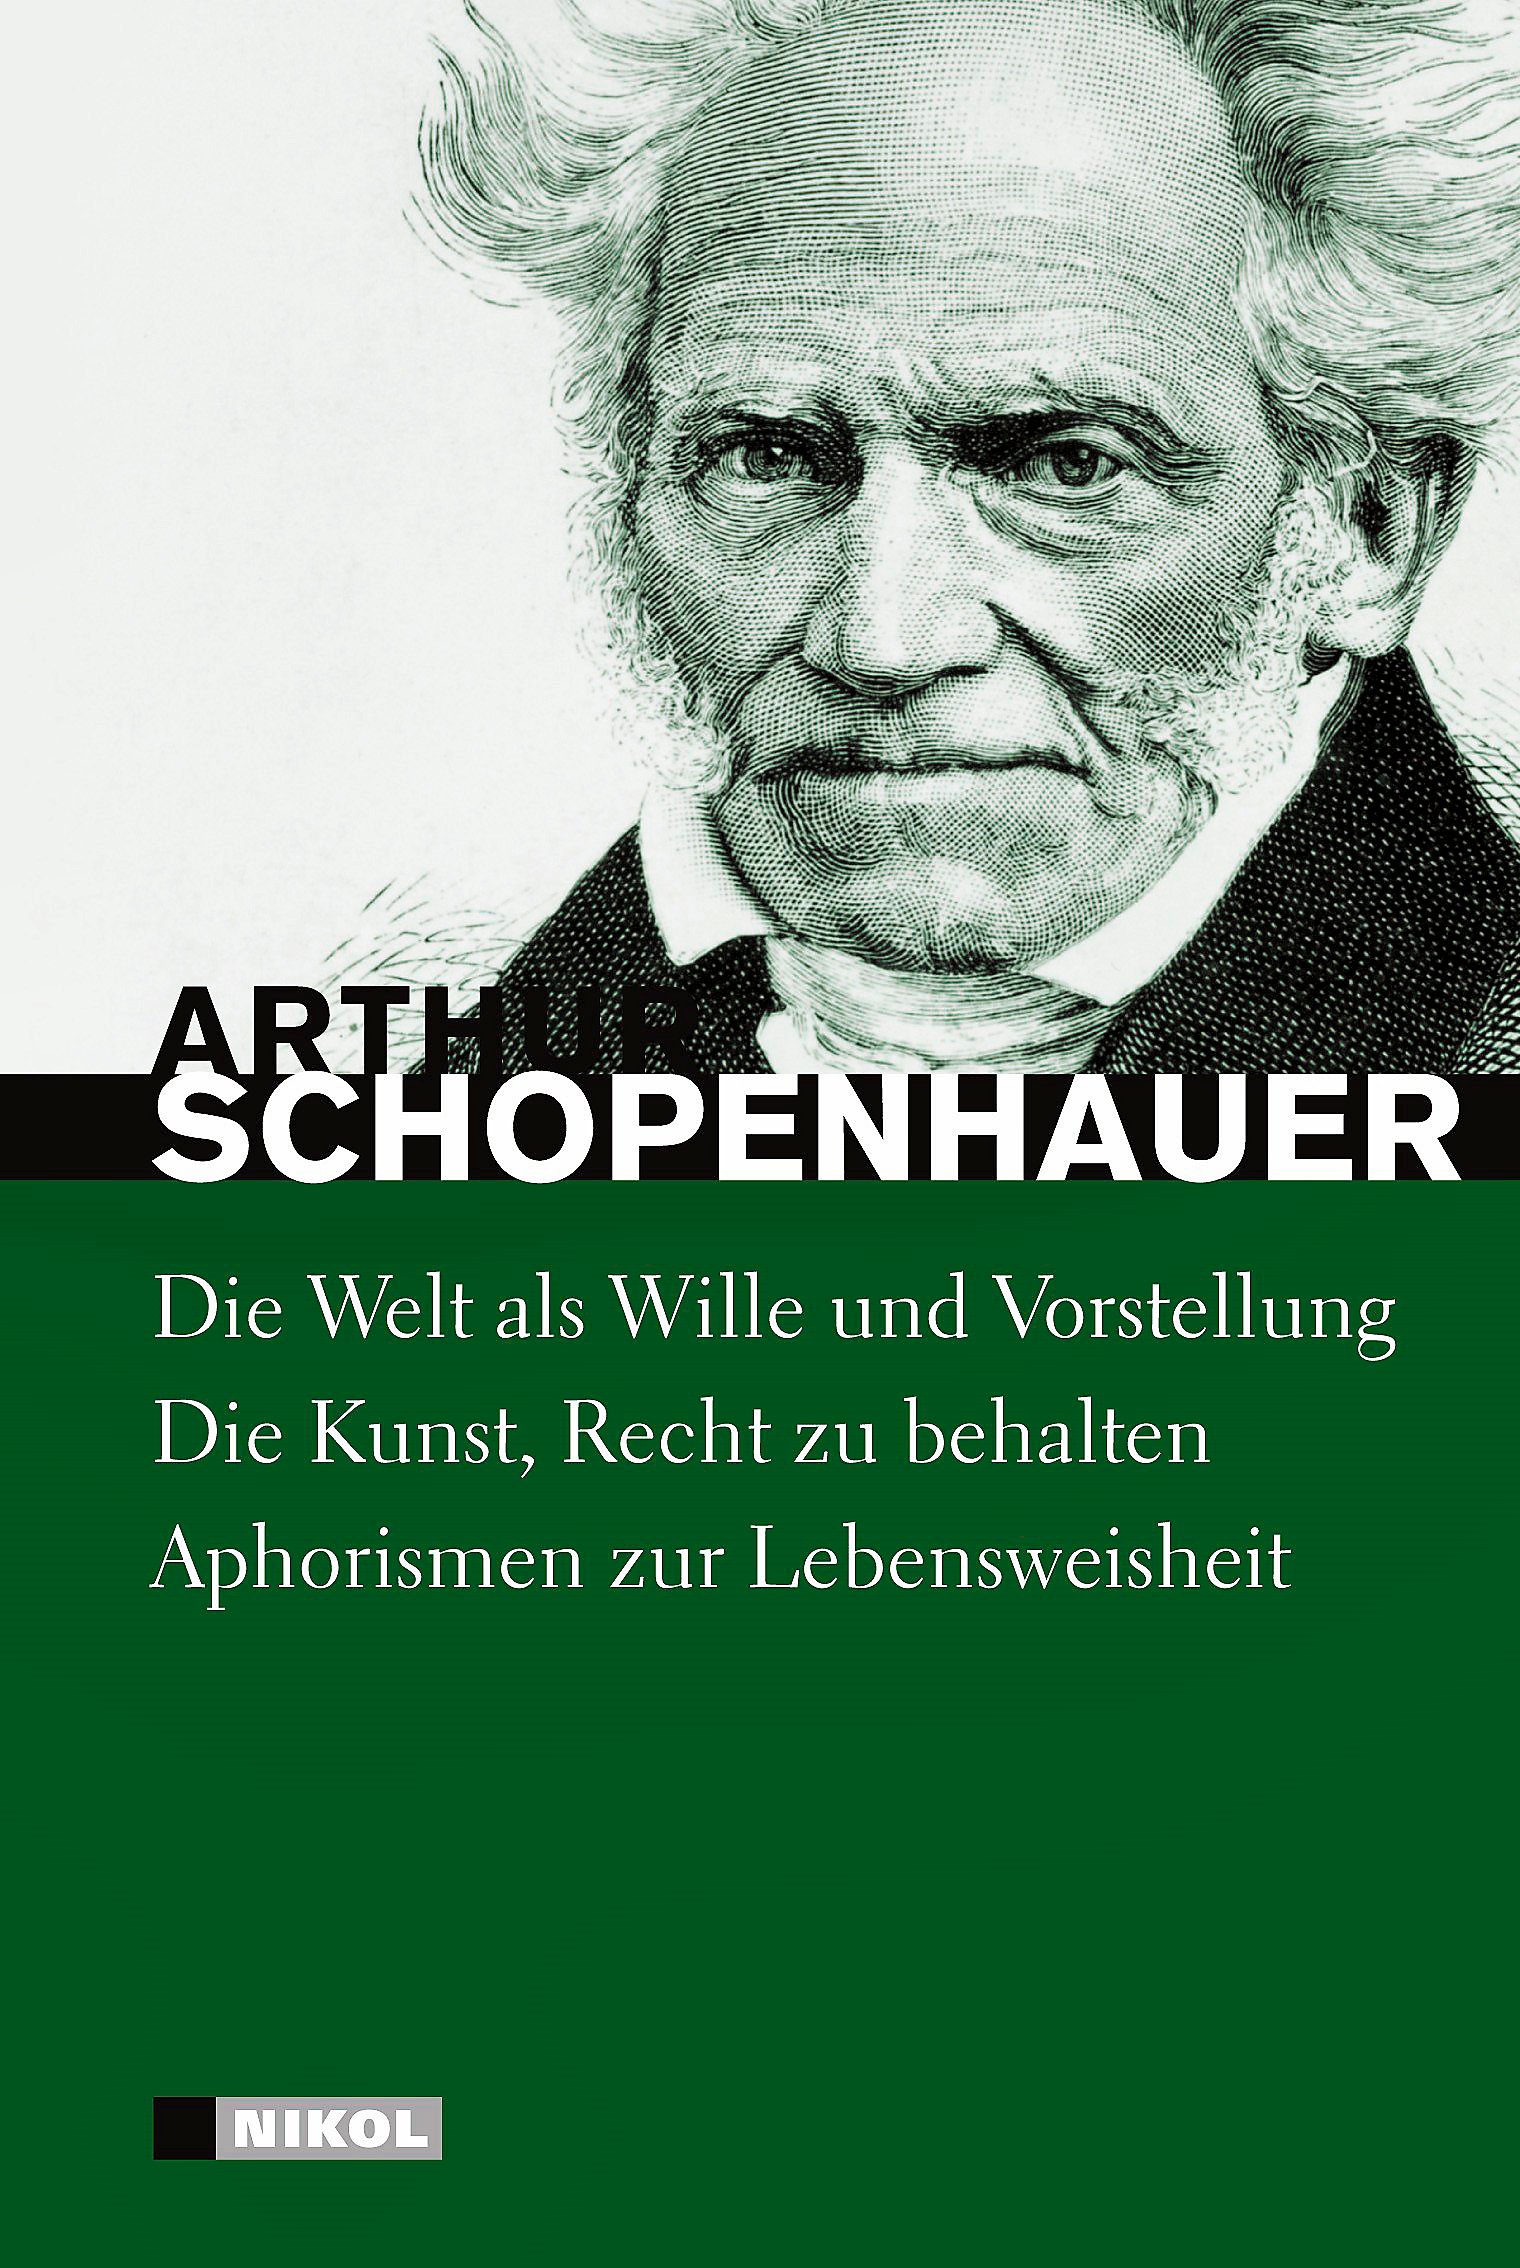 Hauptwerke: Die Welt als Wille und Vorstellung (vollständige Ausgabe), Die Kunst Recht zu behalten, Aphorismen zur Lebensweisheit | Arthur Schopenhauer